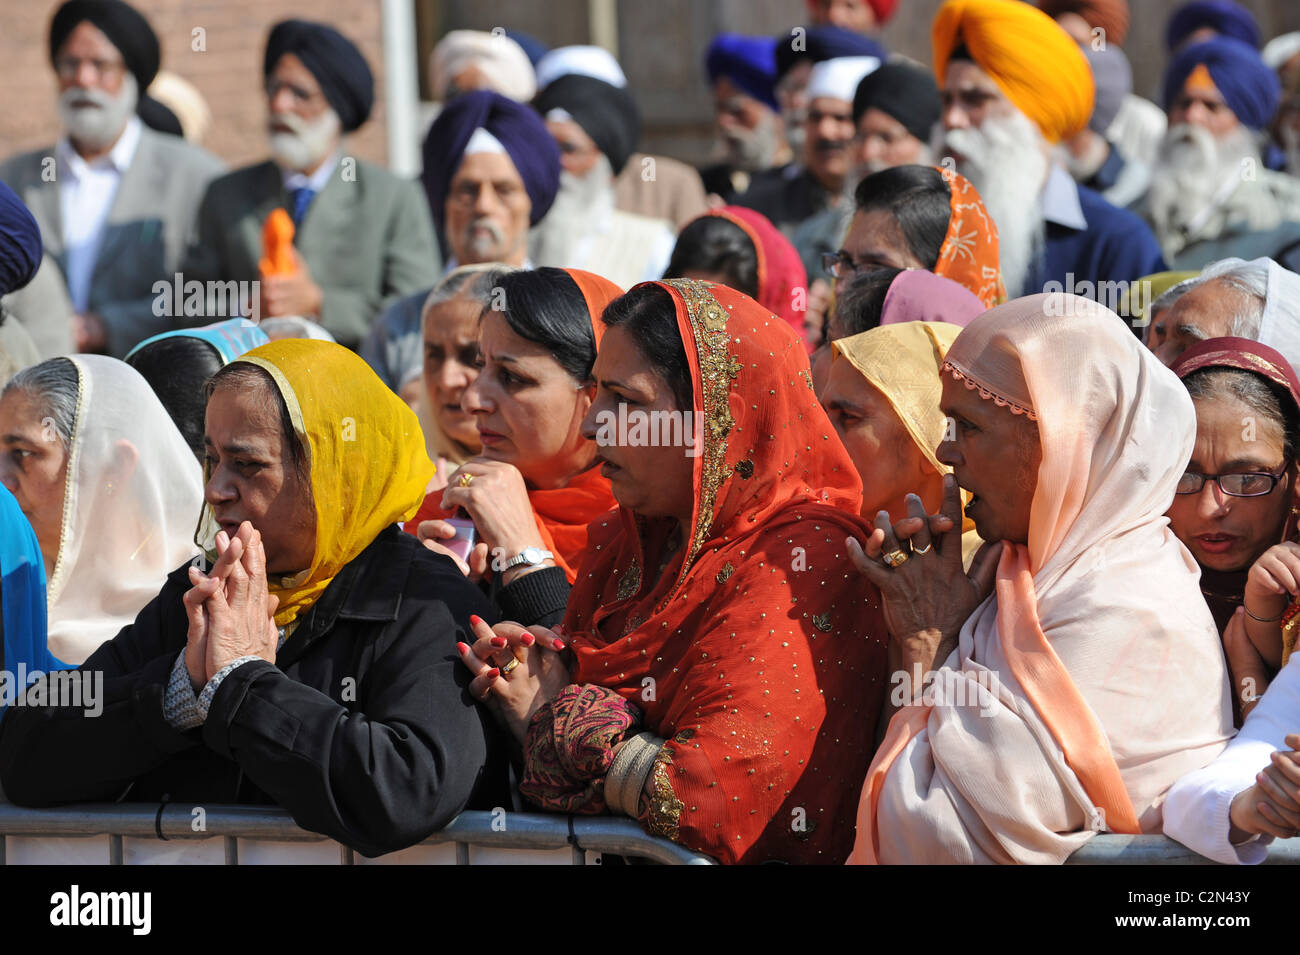 Sikh women queueing for religious ceremony outside Guru Nanak Gurdwara Smethwick Sikh temple Uk West Midland Uk Stock Photo